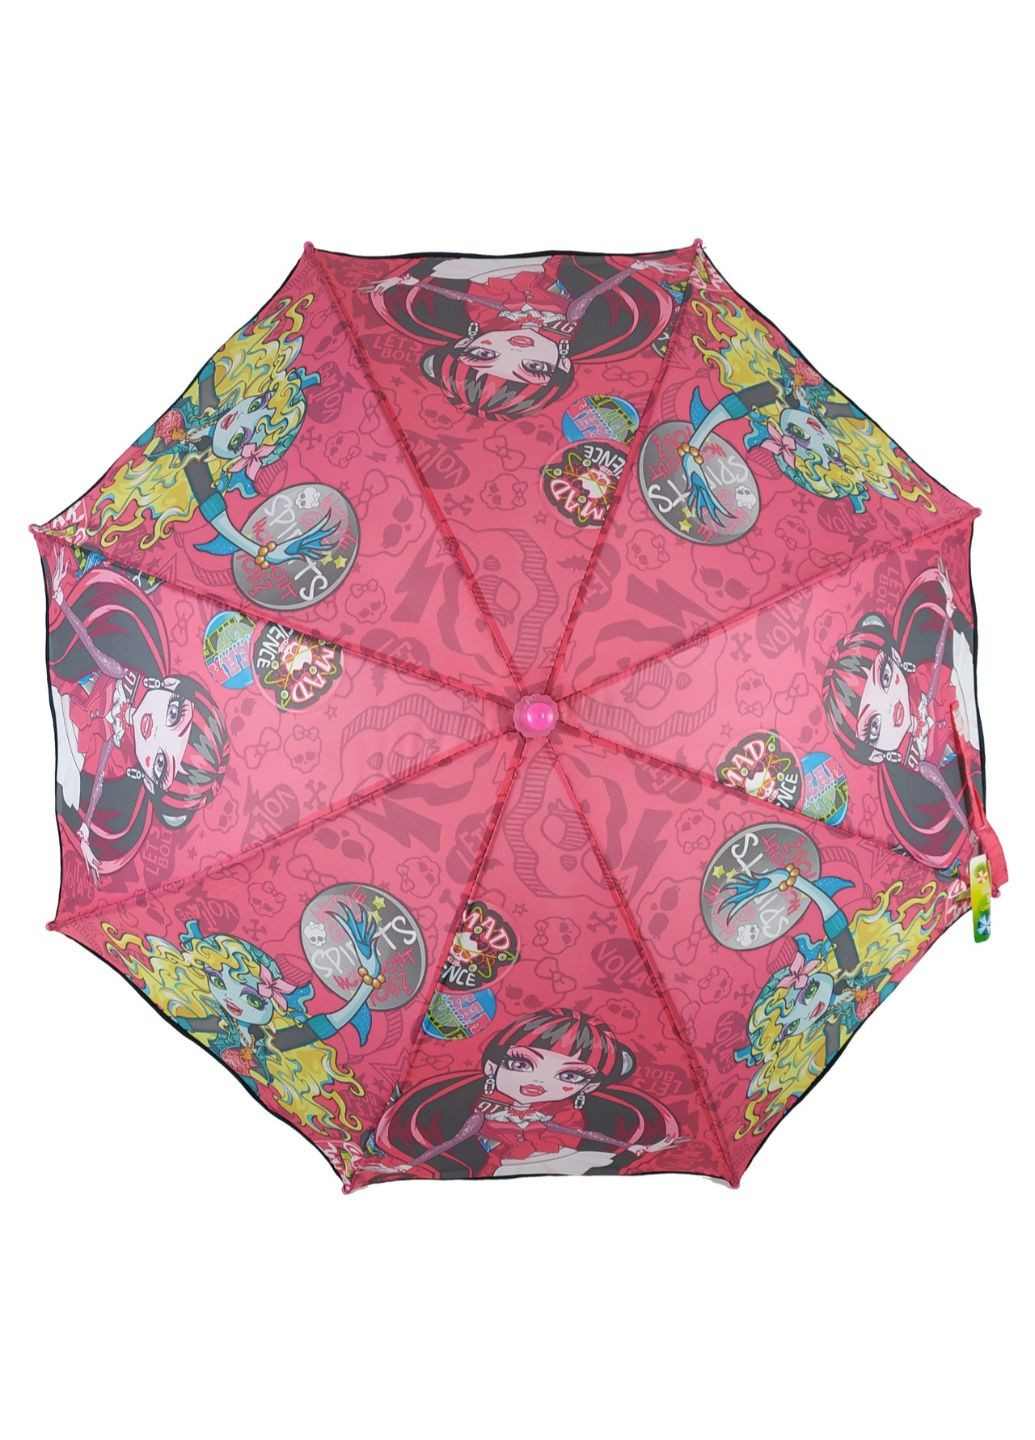 Детский зонтик-трость 88 см Max (195705294)